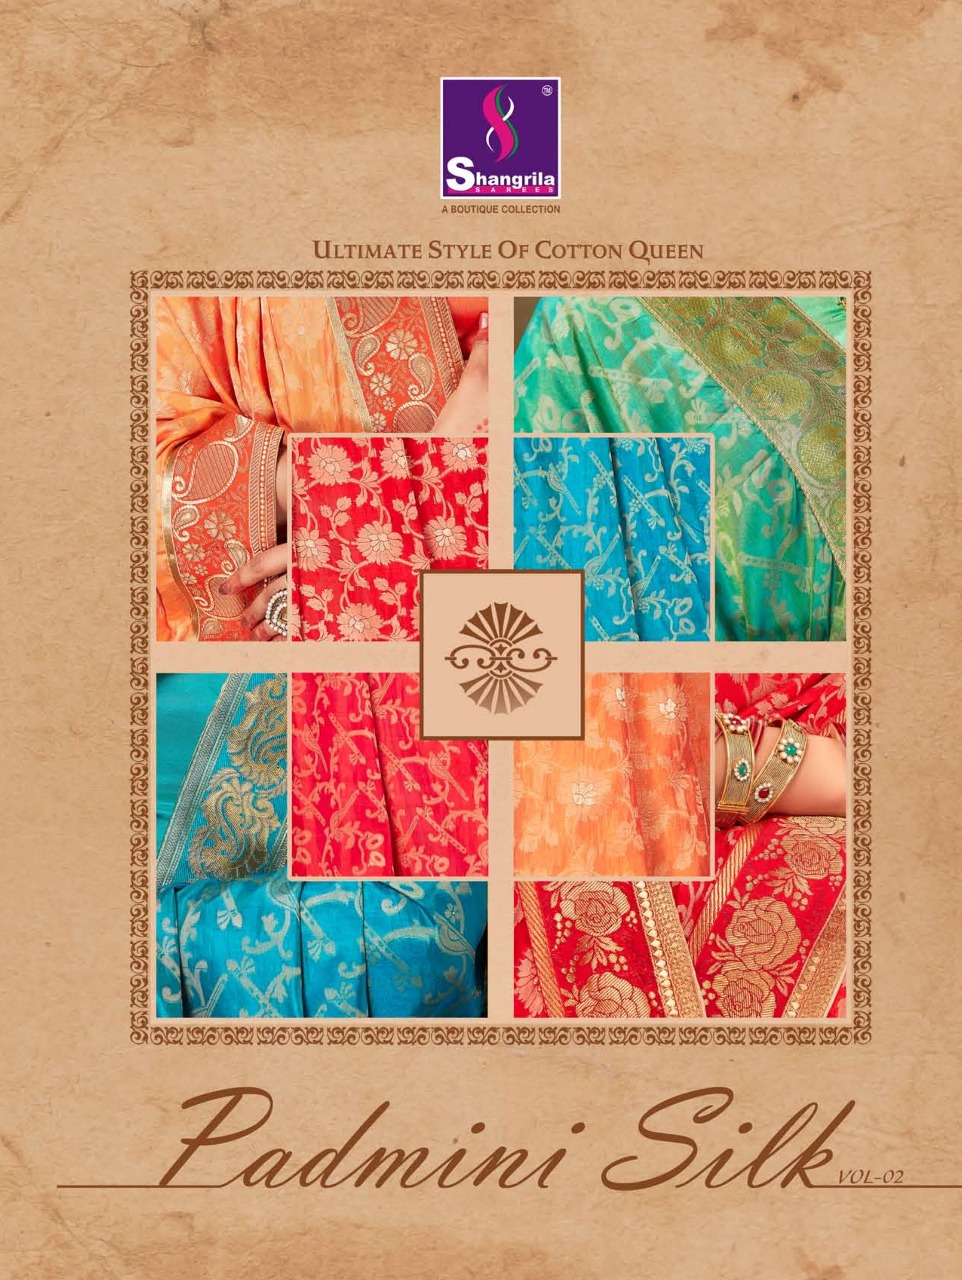 Shangrila padmani silk vol 2 sarees collection